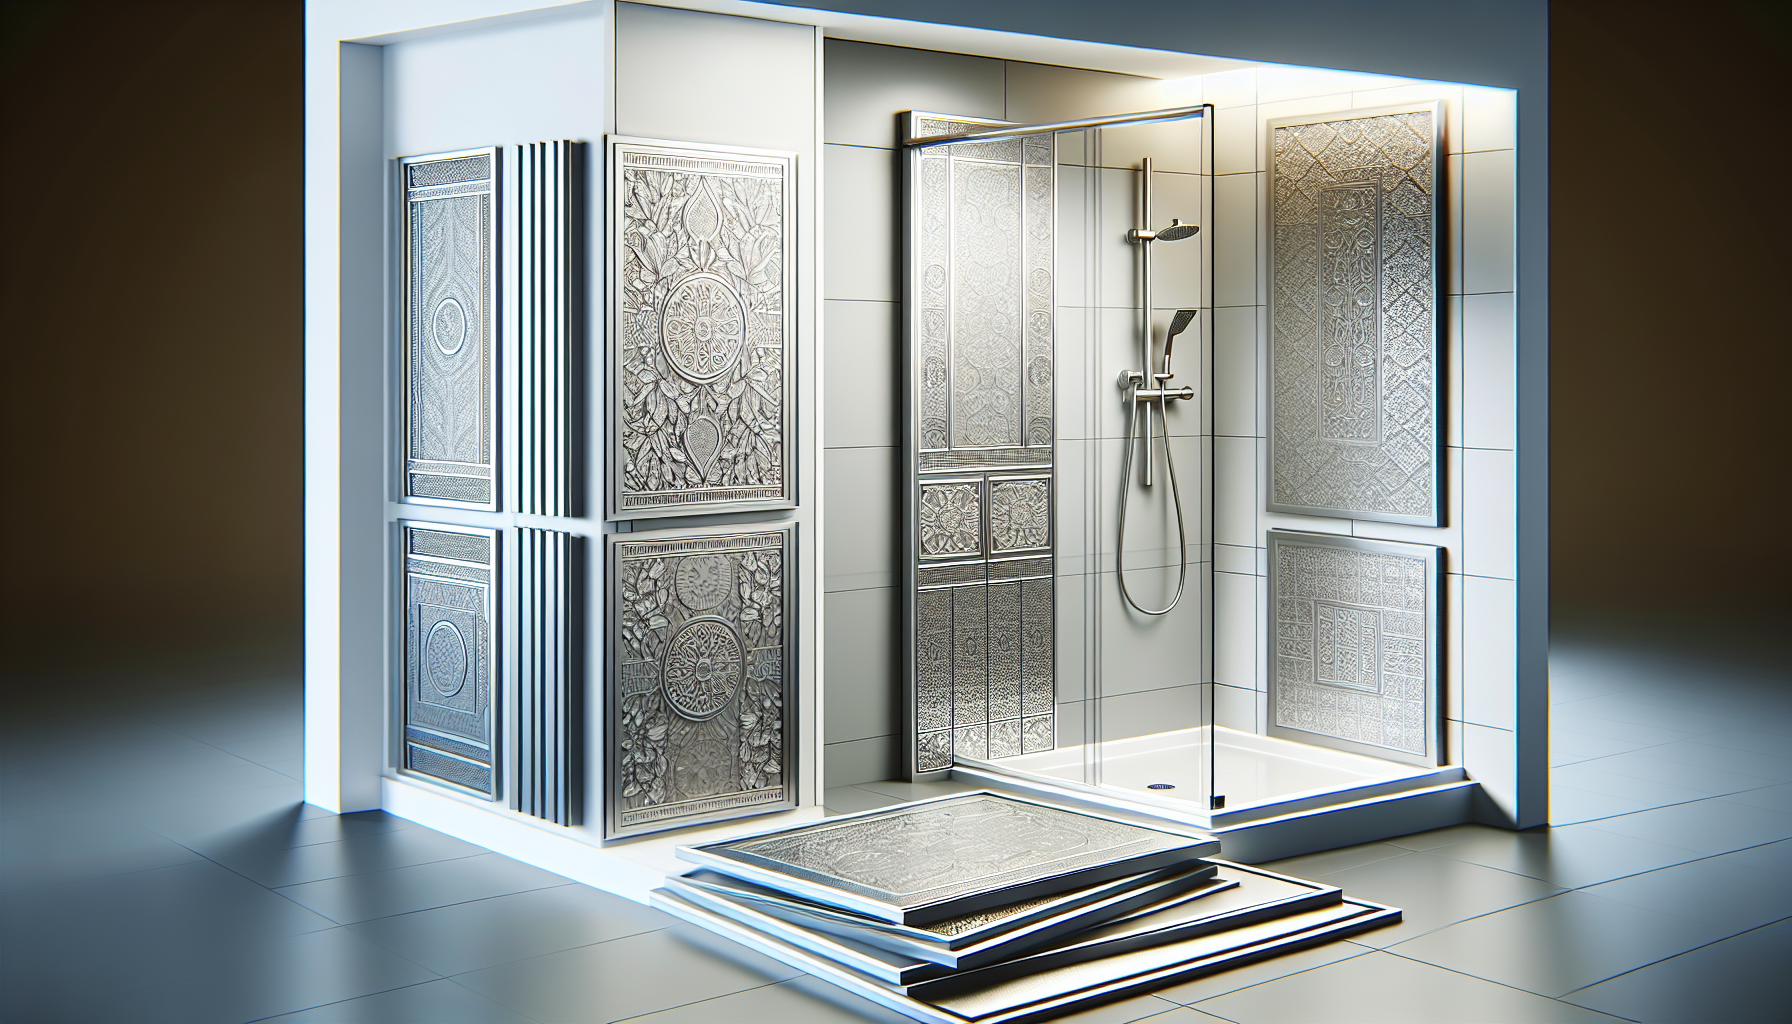 Praktische Lösungen wie Alu-Verbundplatten und Dekorplatten für den Duschbereich